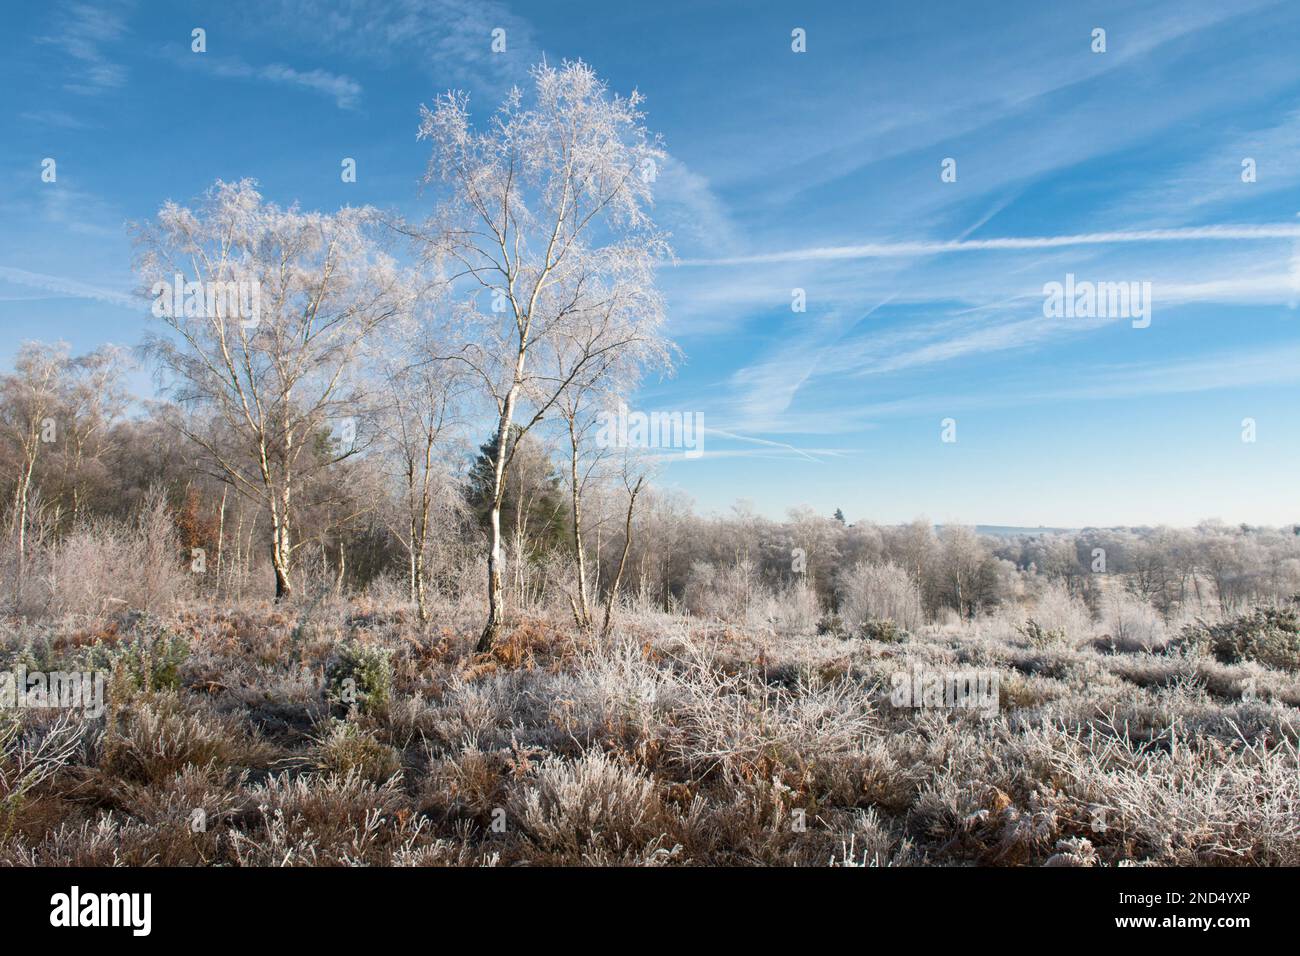 Vue sur le givre, le givre, Iping Common, Sussex, Royaume-Uni, Janvier, paysage, bouleau argenté, betula pendula. Chiné. Santé des basses terres Banque D'Images